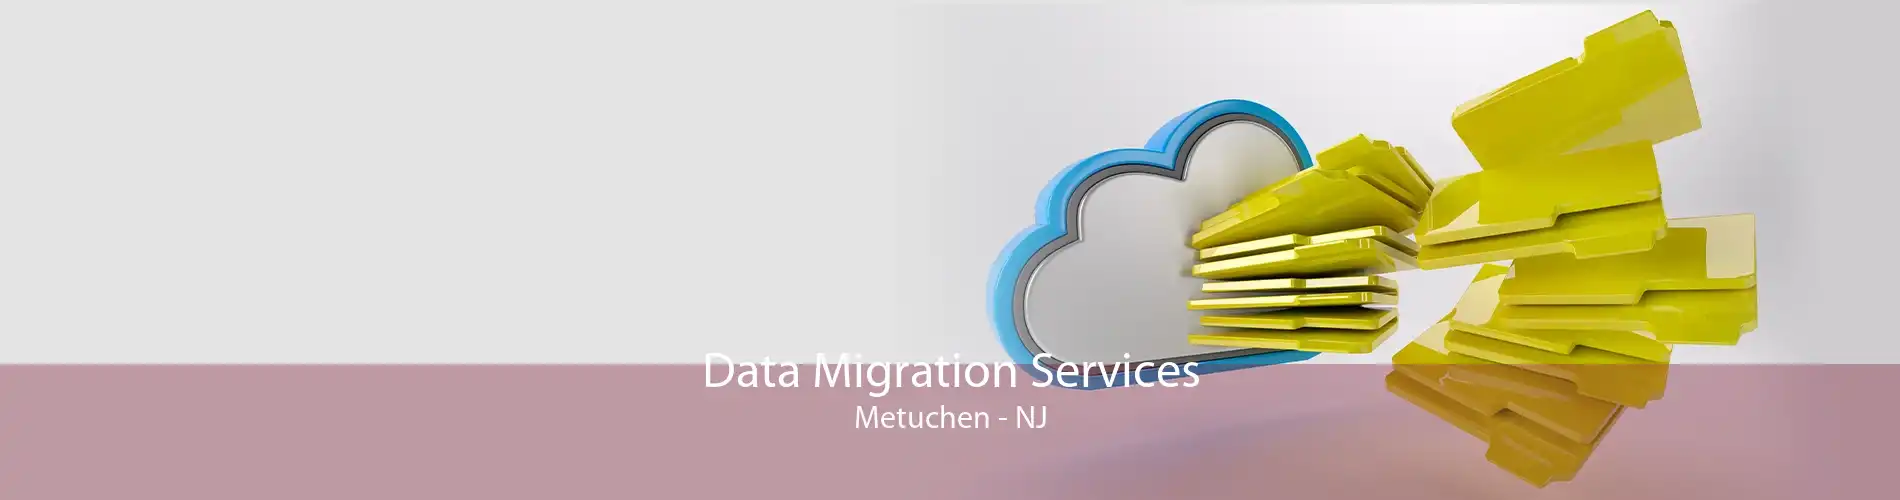 Data Migration Services Metuchen - NJ